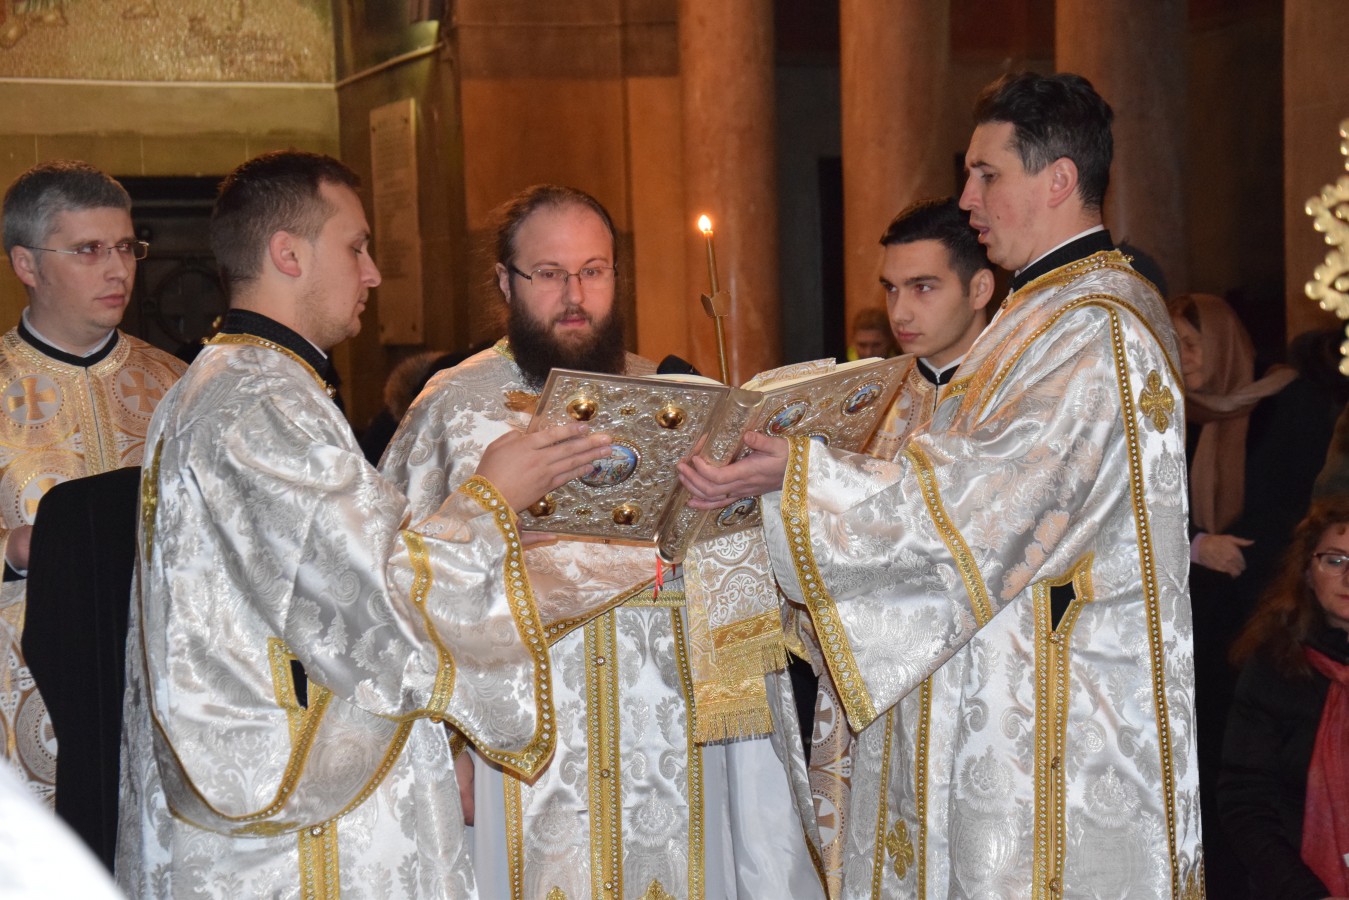 Practici liturgice, în Ajunul Bobotezei